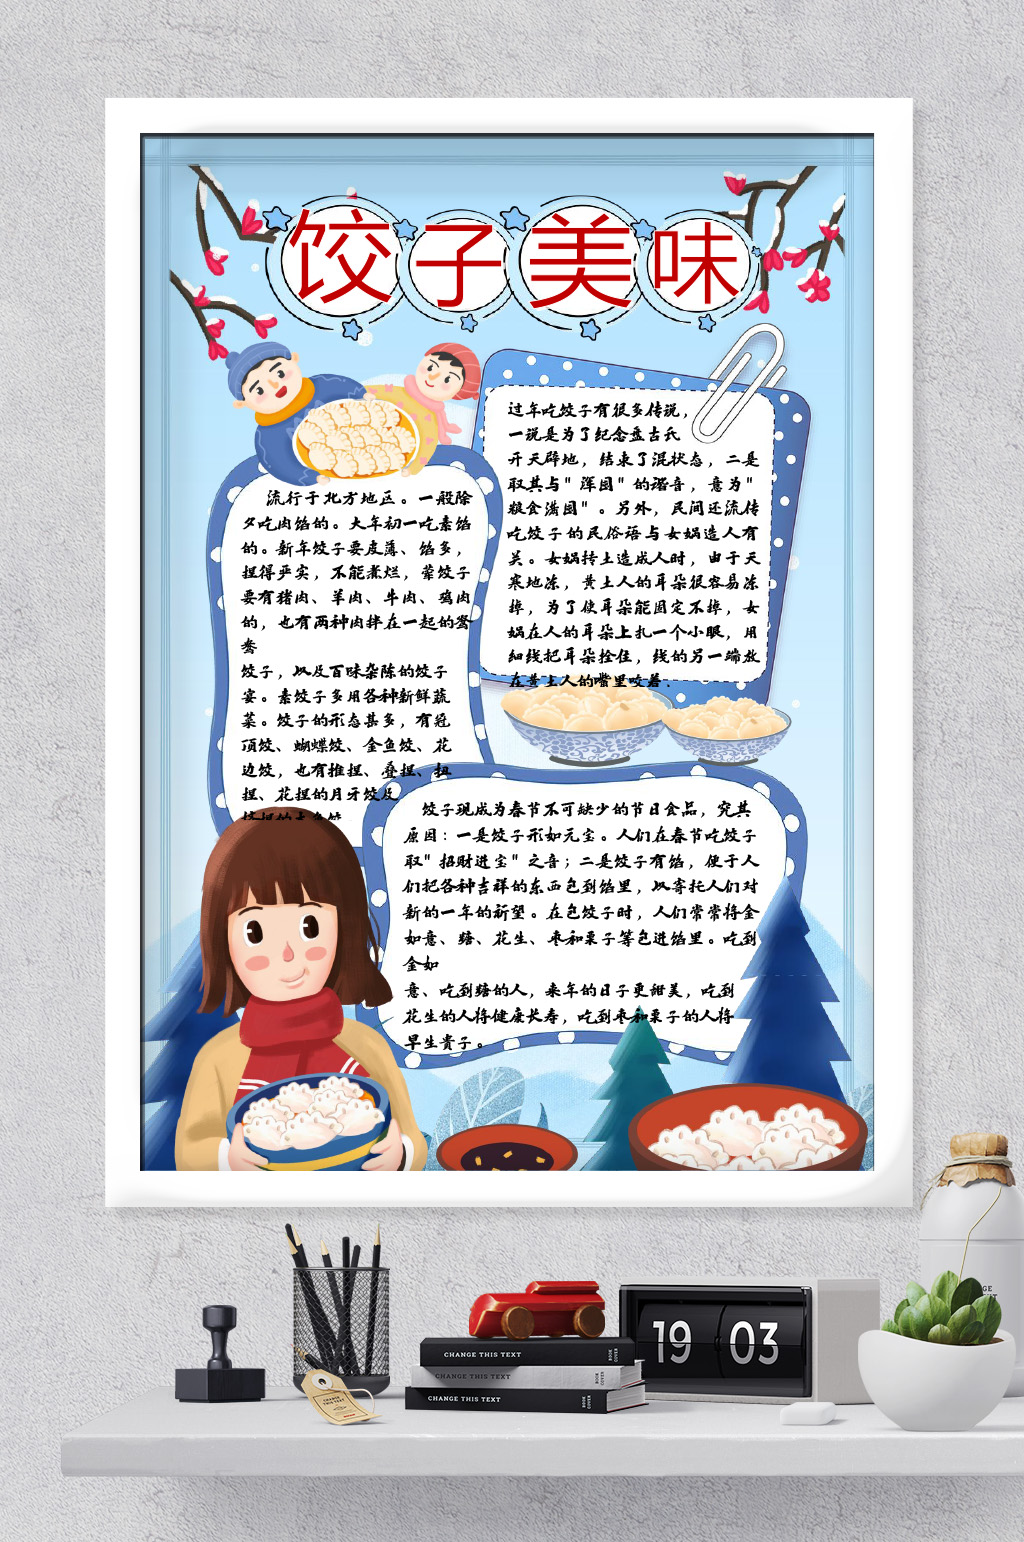 饺子文化的手抄报内容图片